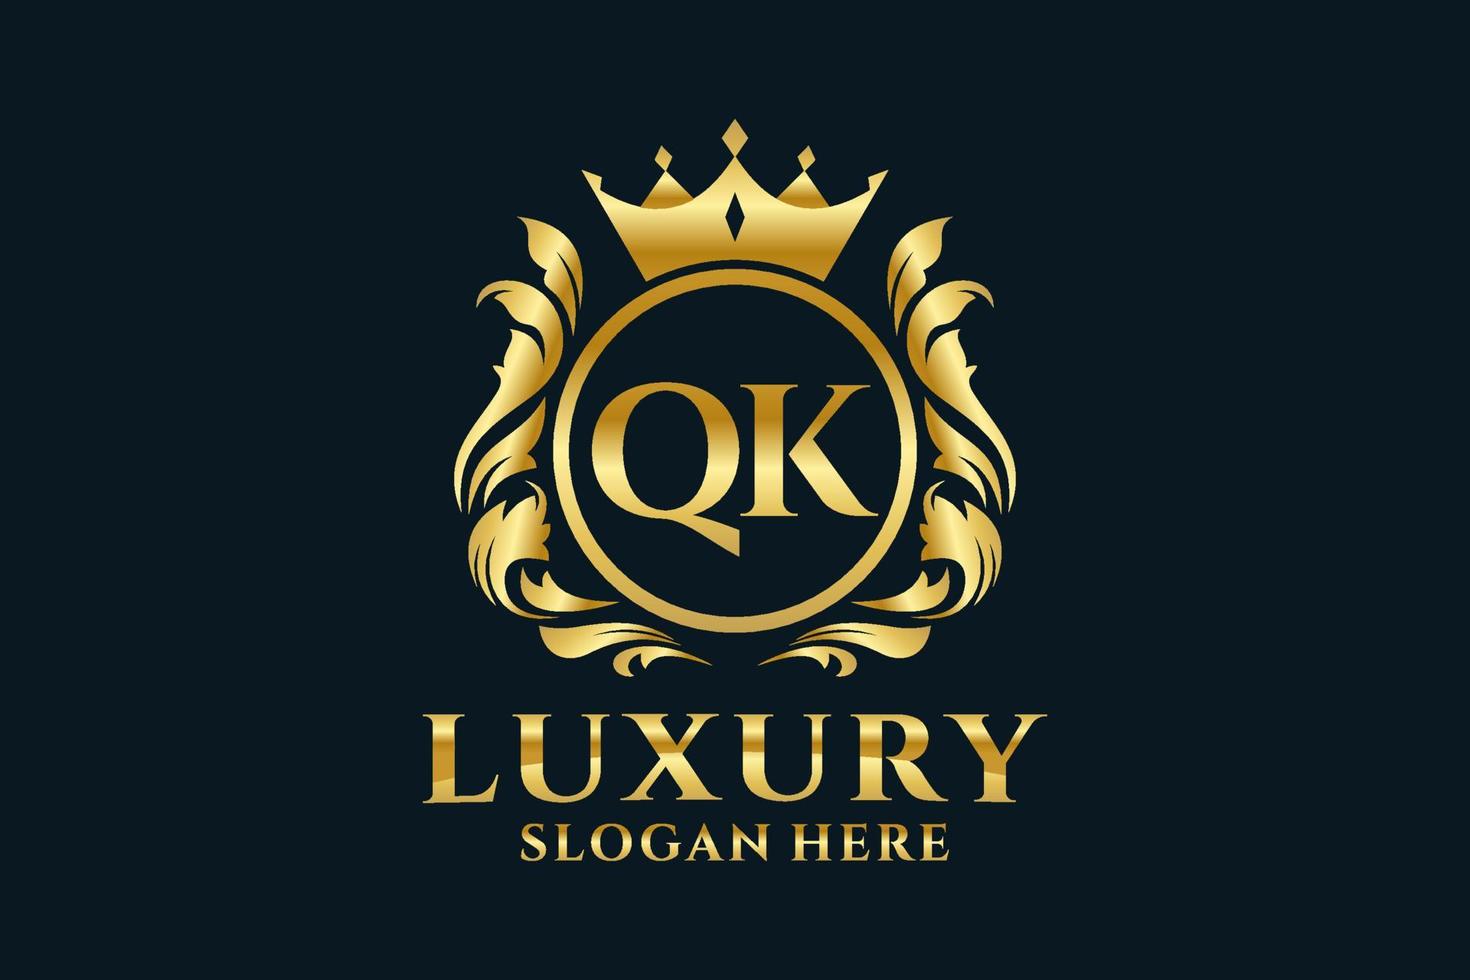 plantilla de logotipo de lujo real de letra qk inicial en arte vectorial para proyectos de marca de lujo y otras ilustraciones vectoriales. vector